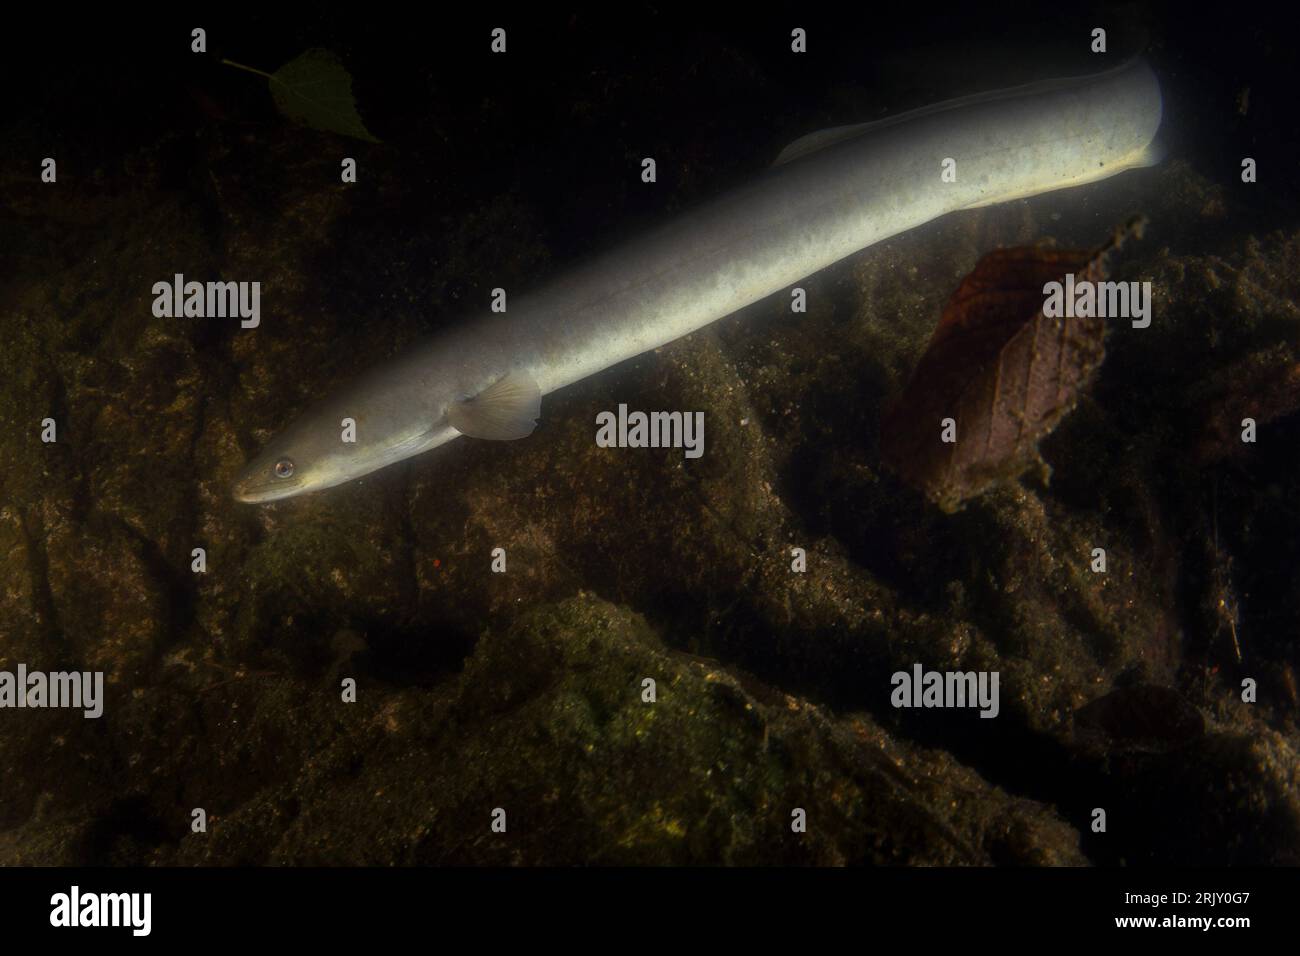 Europäischer Aal beim Nachttauchgang im See. Lange Anguilla anguilla in der Nähe des Bodens. Langer Fisch sieht aus wie eine Schlange. Europäisches Wasser. Stockfoto